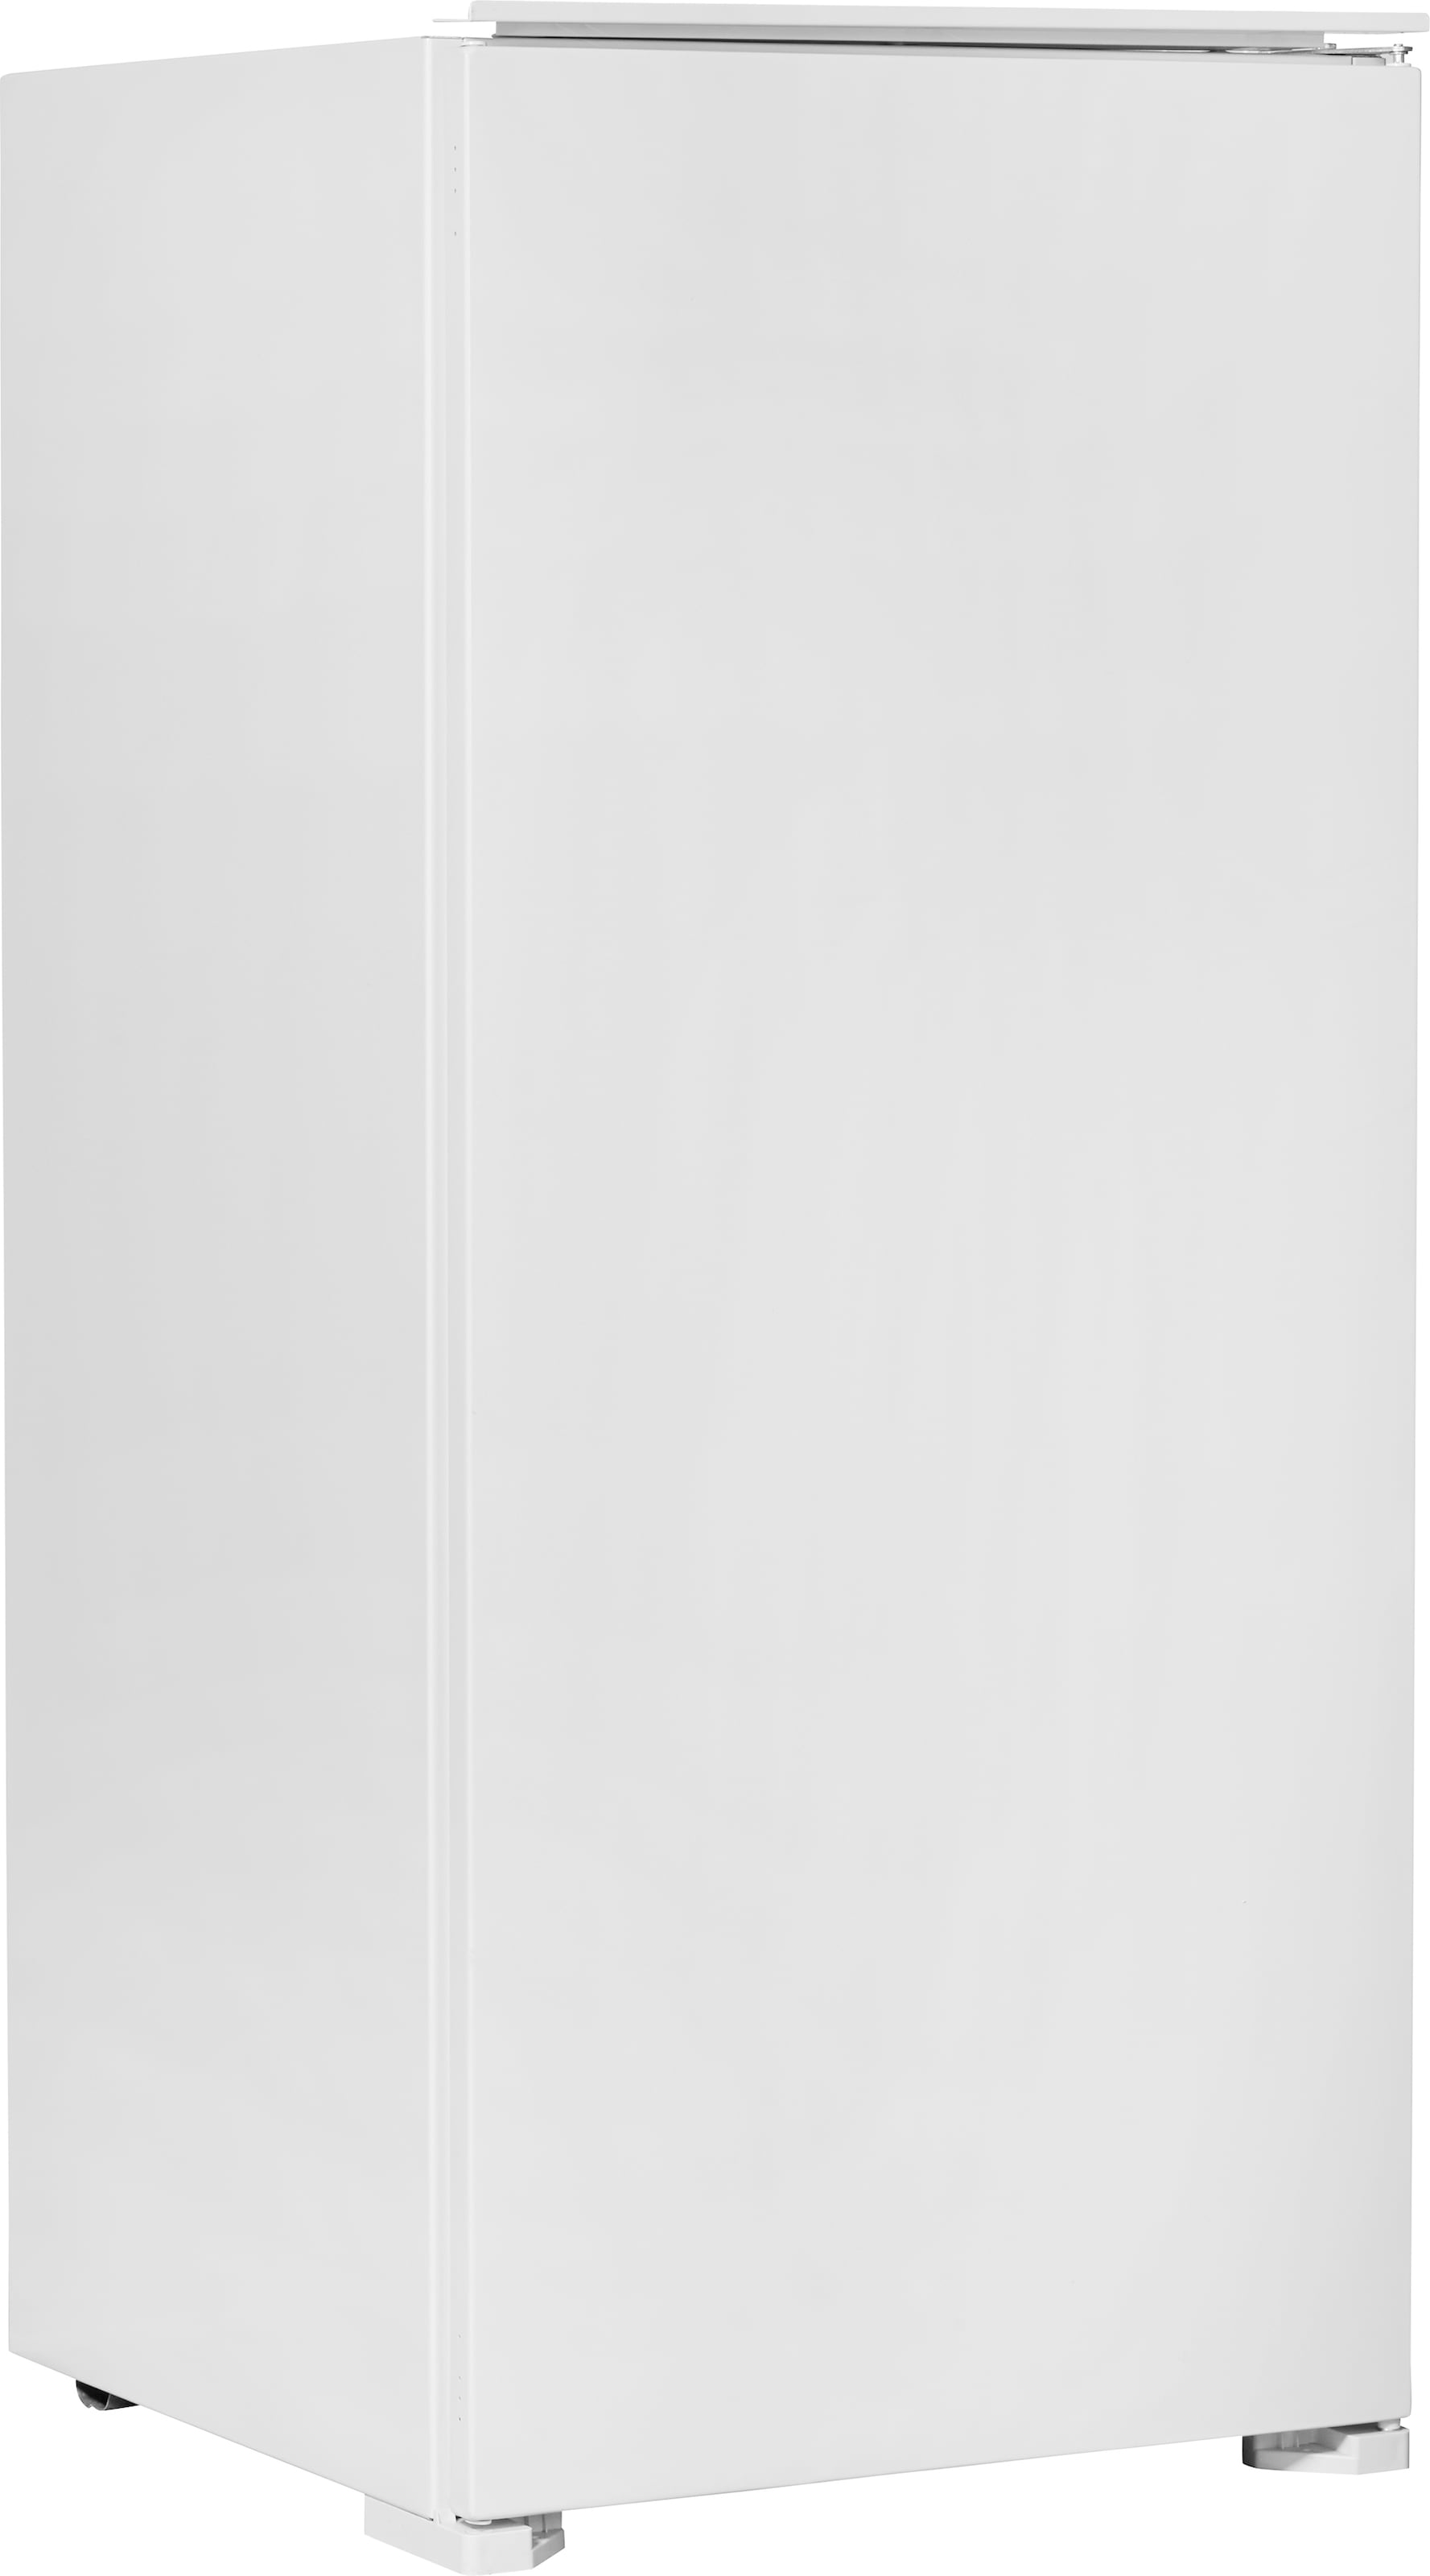 Hanseatic Einbaukühlschrank, HEKS12254F, 123 cm hoch, 54 cm breit